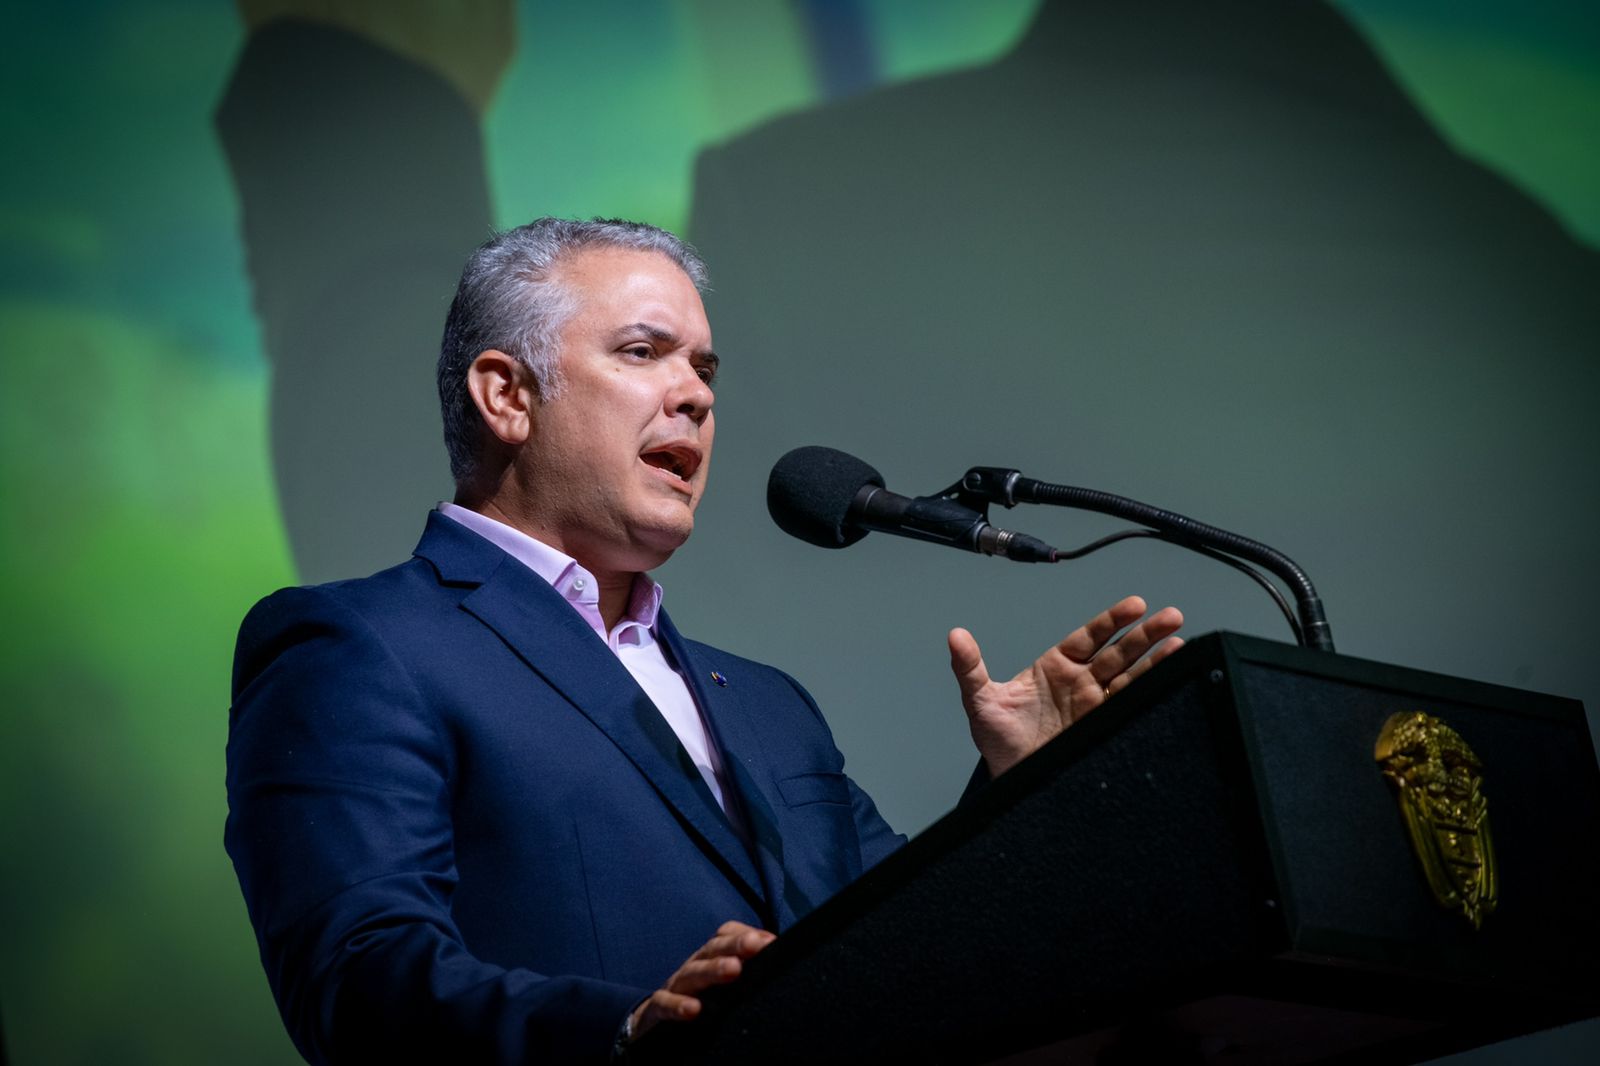 El Presidente Iván Duque aprobó la permanencia de la justicia virtual en Colombia